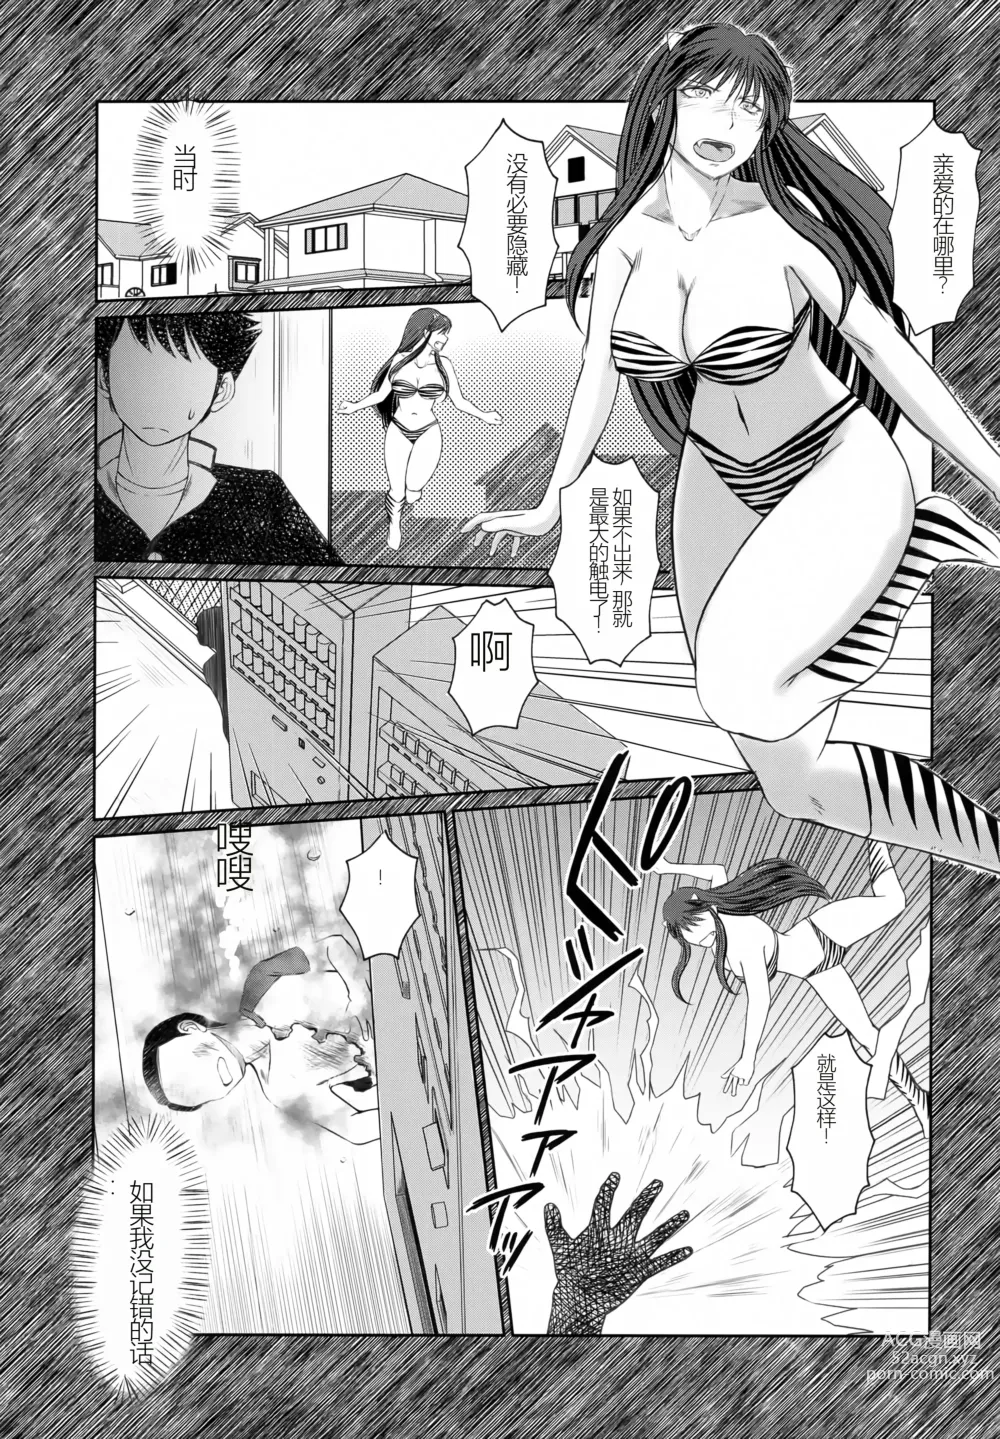 Page 6 of doujinshi Menyouna Yatsura